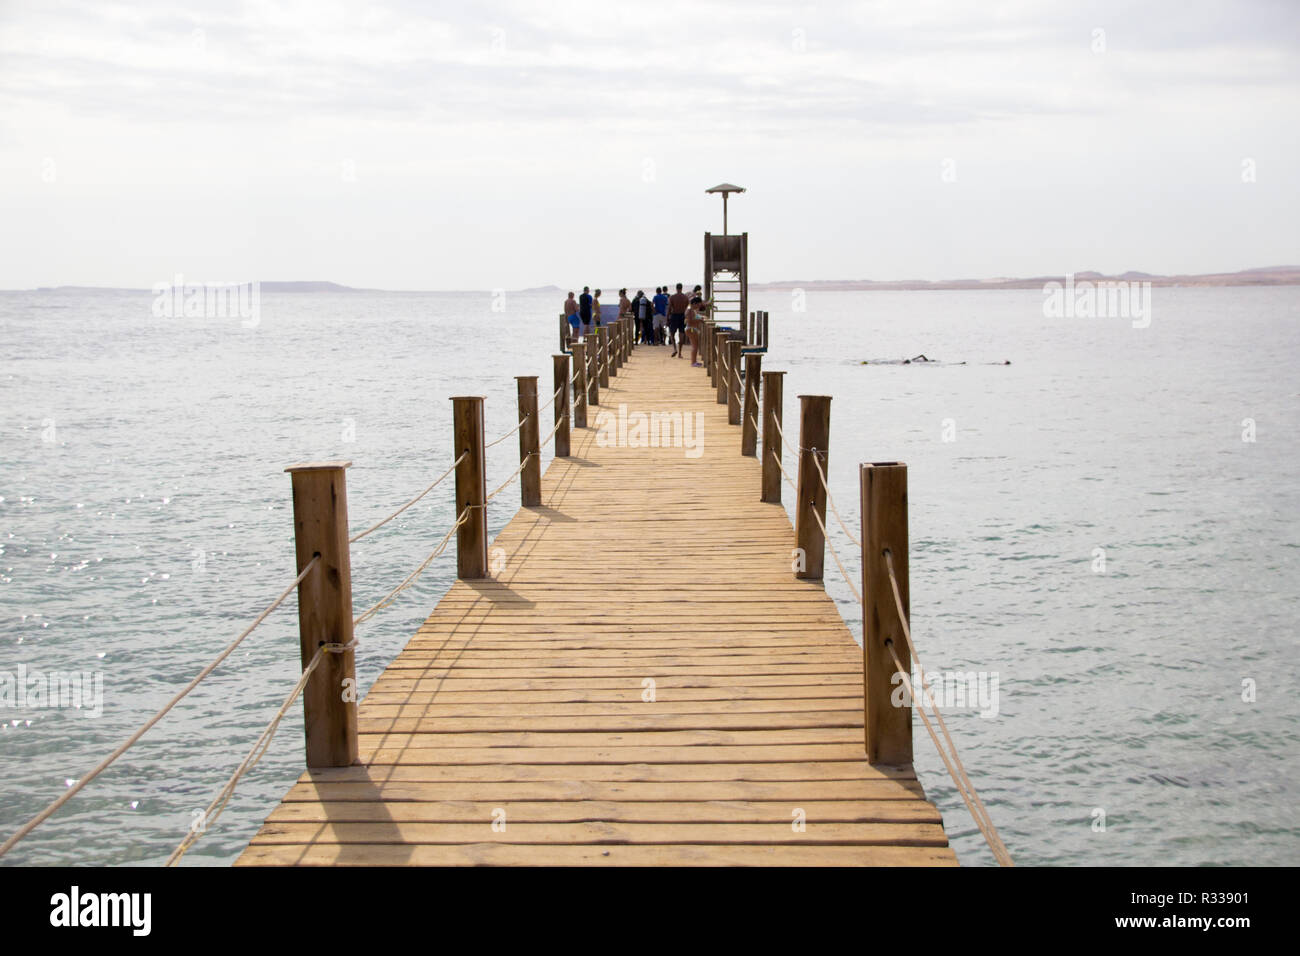 El-Shaikh Sharm, Ägypten - November 2, 2018: - Foto für hölzerne Brücke in Küste des Roten Meeres in der ägyptischen Stadt Scharm el-Scheich, und einige Touristen zu Fuß Stockfoto